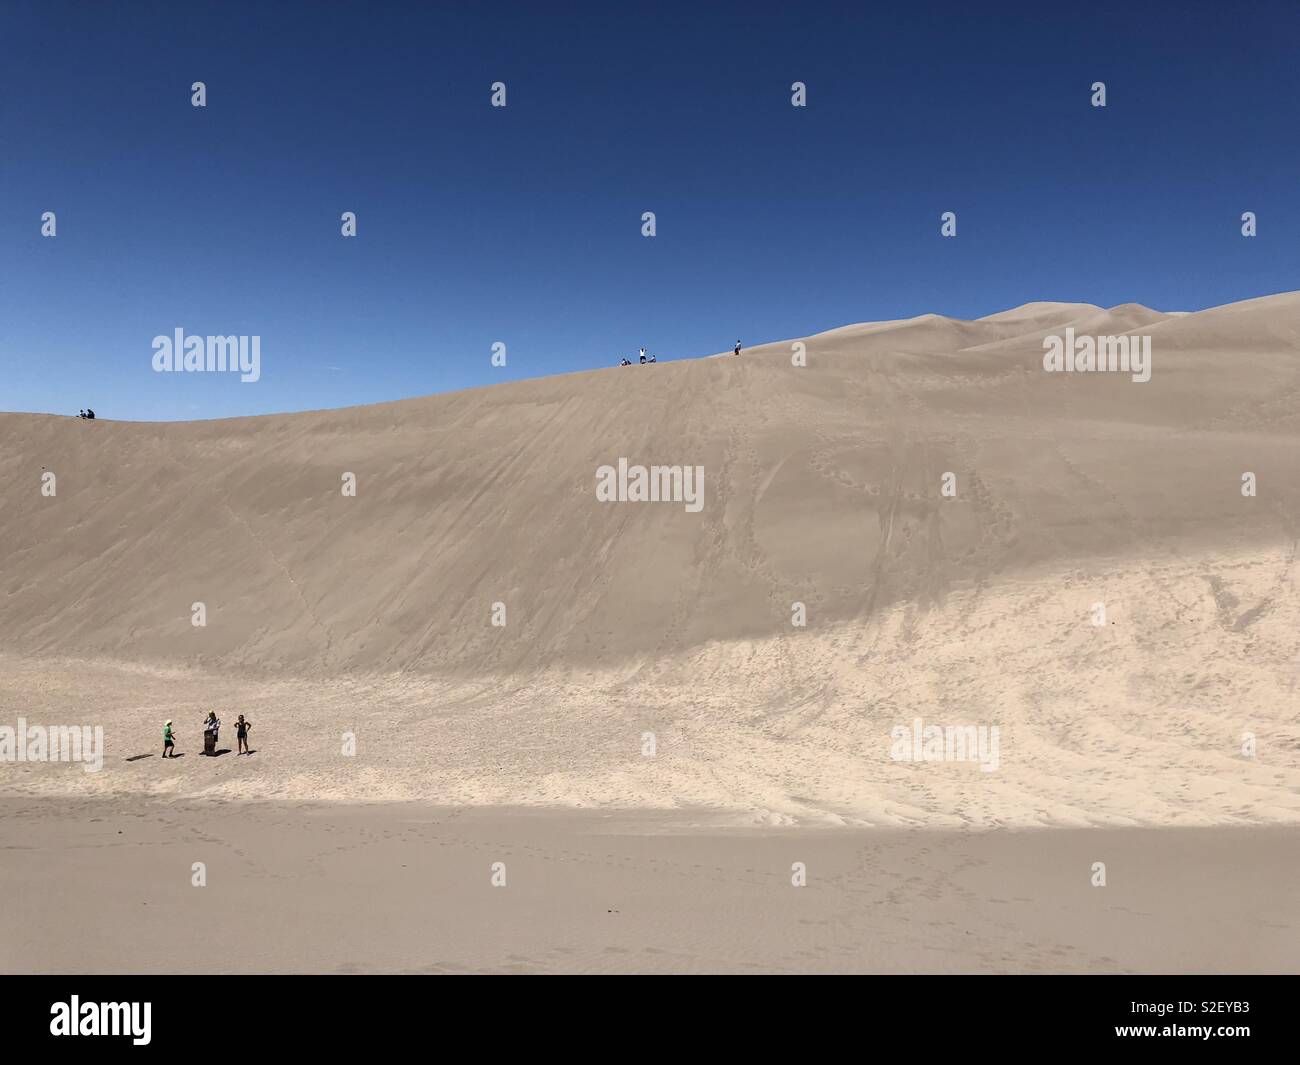 Besucher Great Sand Dunes National Park in Colorado Wanderung durch den größten Sanddünen in den Vereinigten Staaten. Besucher können Schlitten mieten, Sand und sand Boards die Dünen hinunter bis zu 35 mph zu schieben. Stockfoto